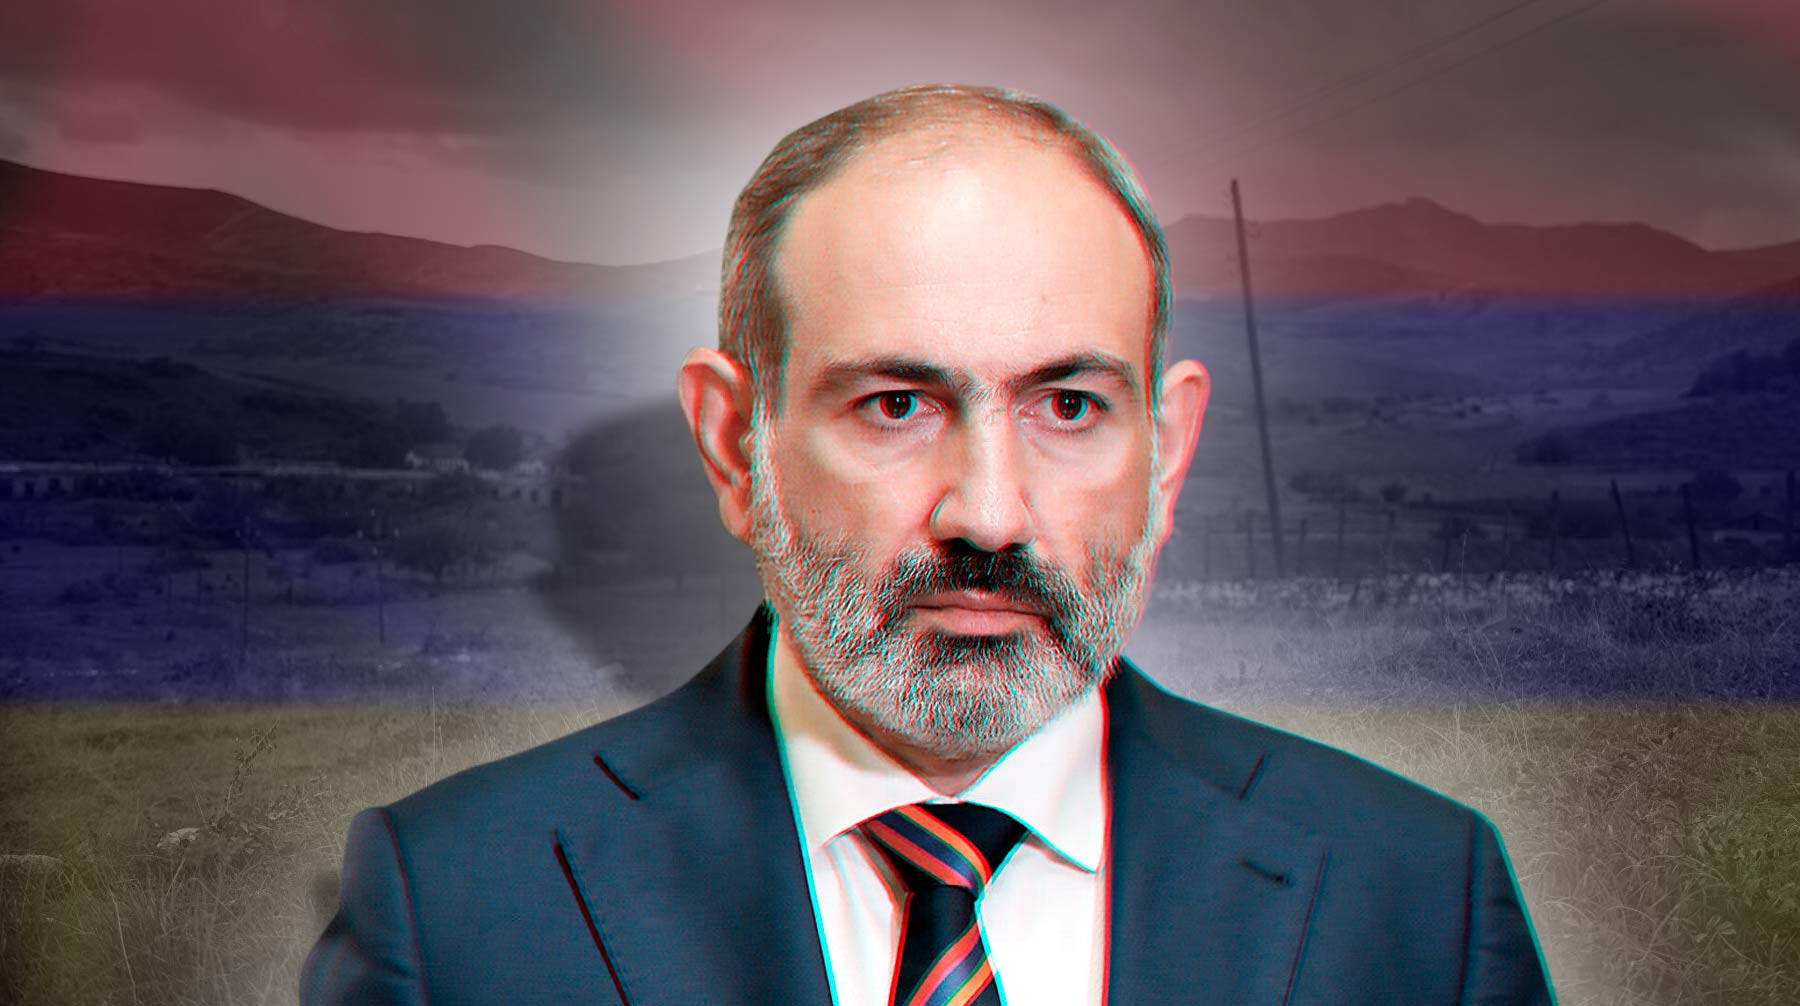 Антироссийской риторики на фоне национальной катастрофы в Карабахе от политиков не слышно Коллаж: © Daily Storm